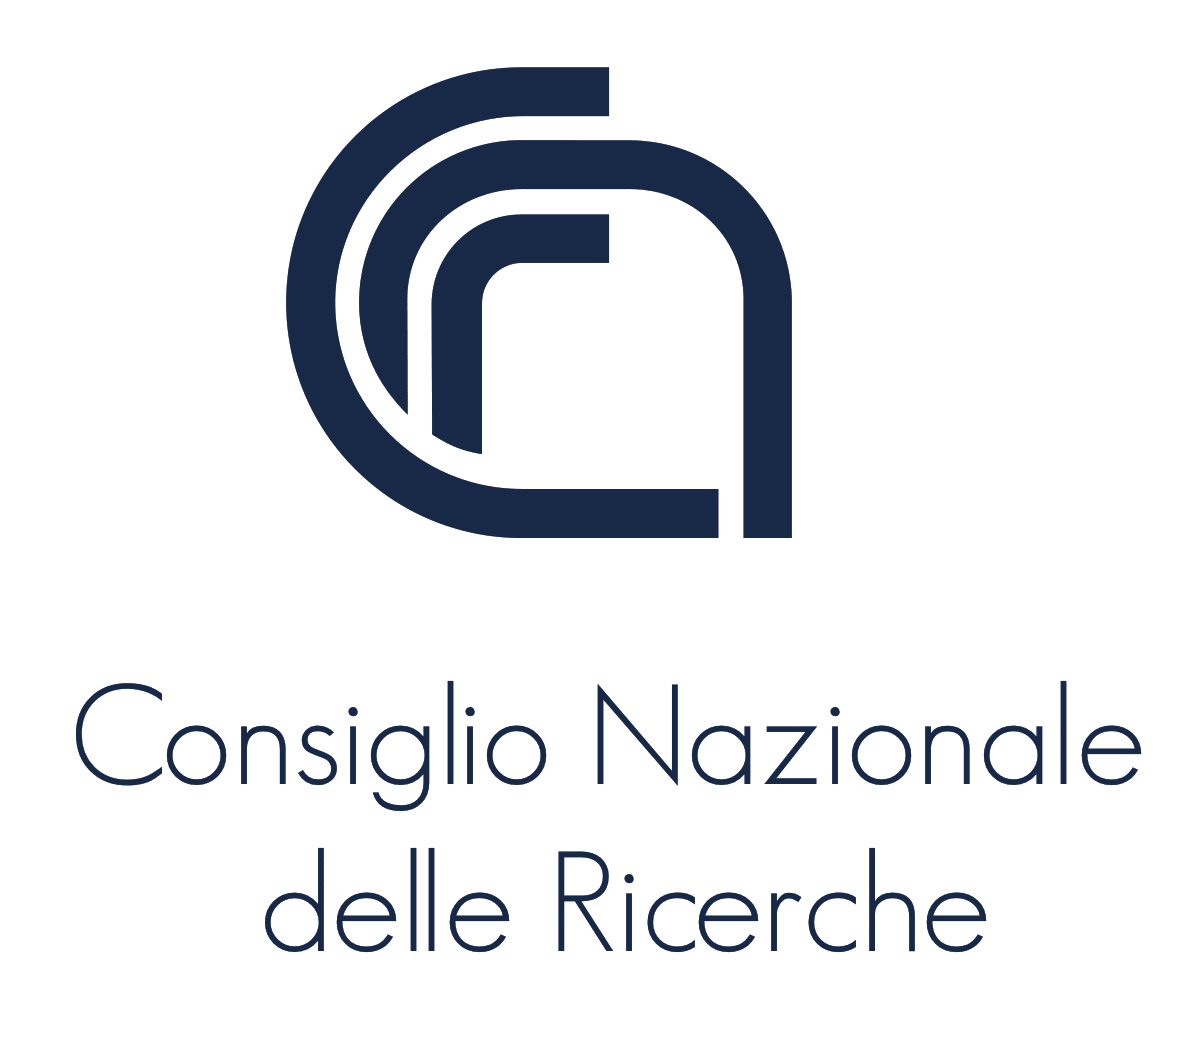 rome business school partner cnr logo